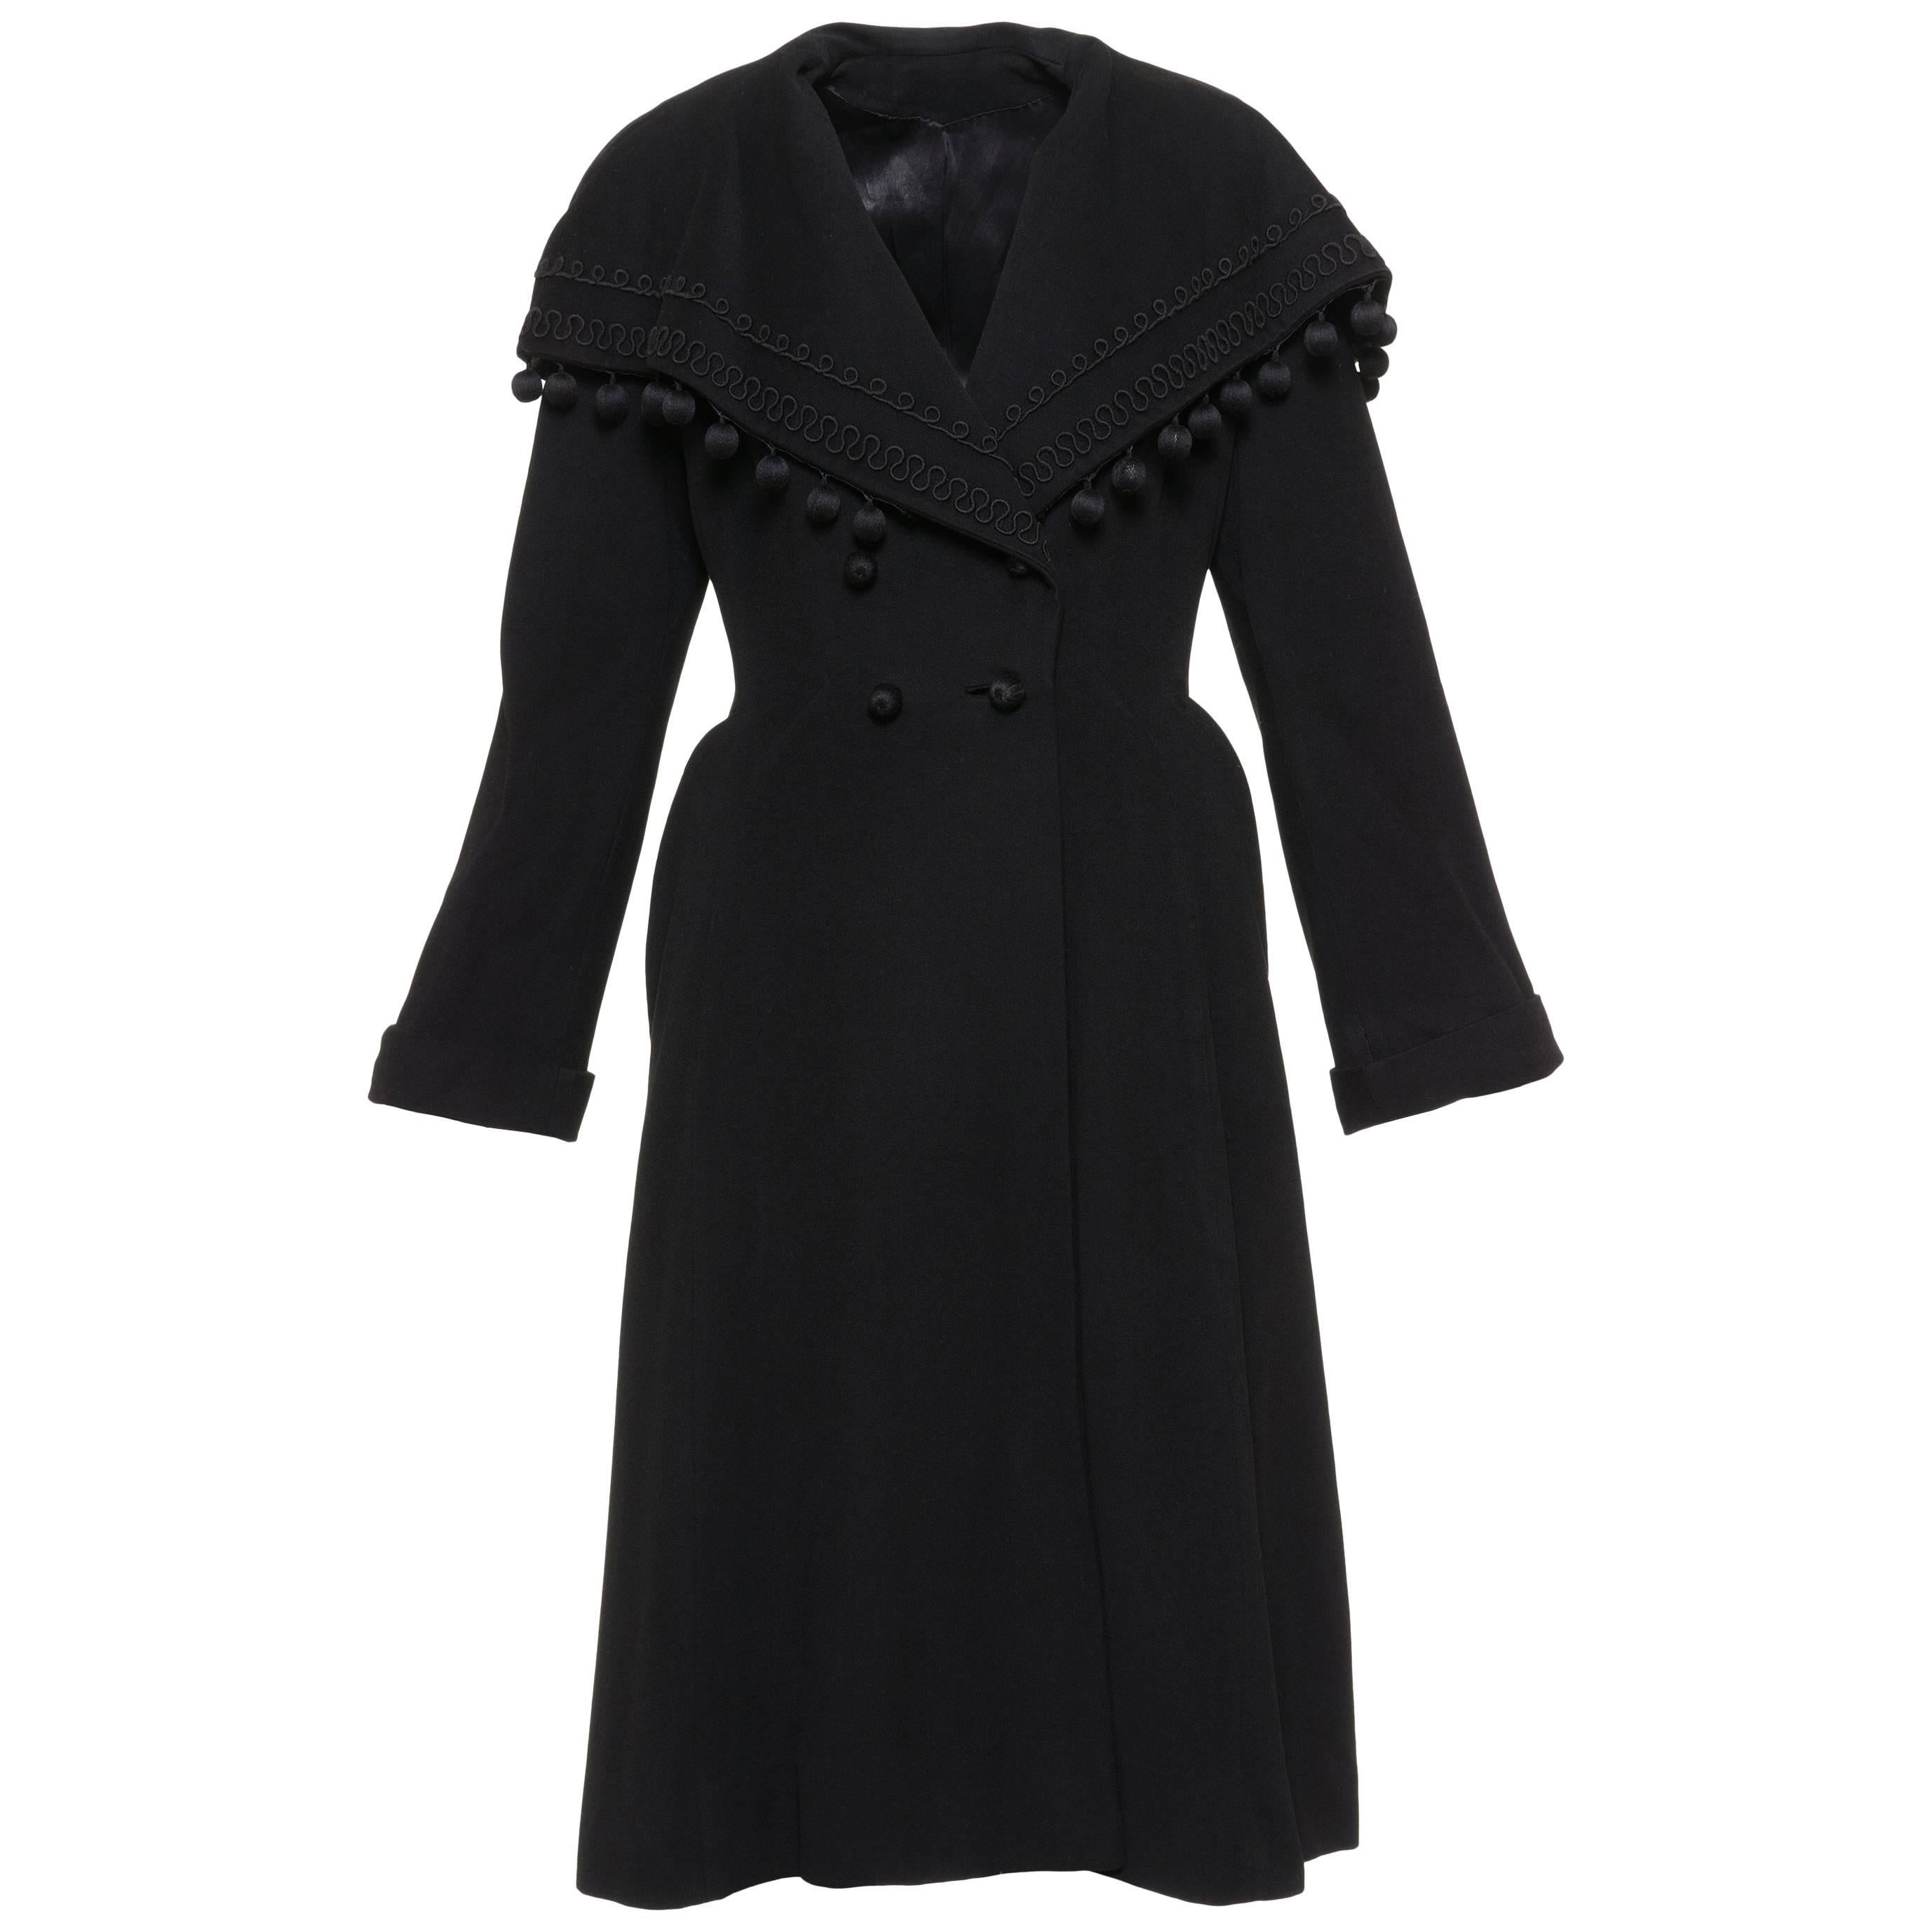 Vintage 1940s Black Wool New Look Princess Coat For Sale